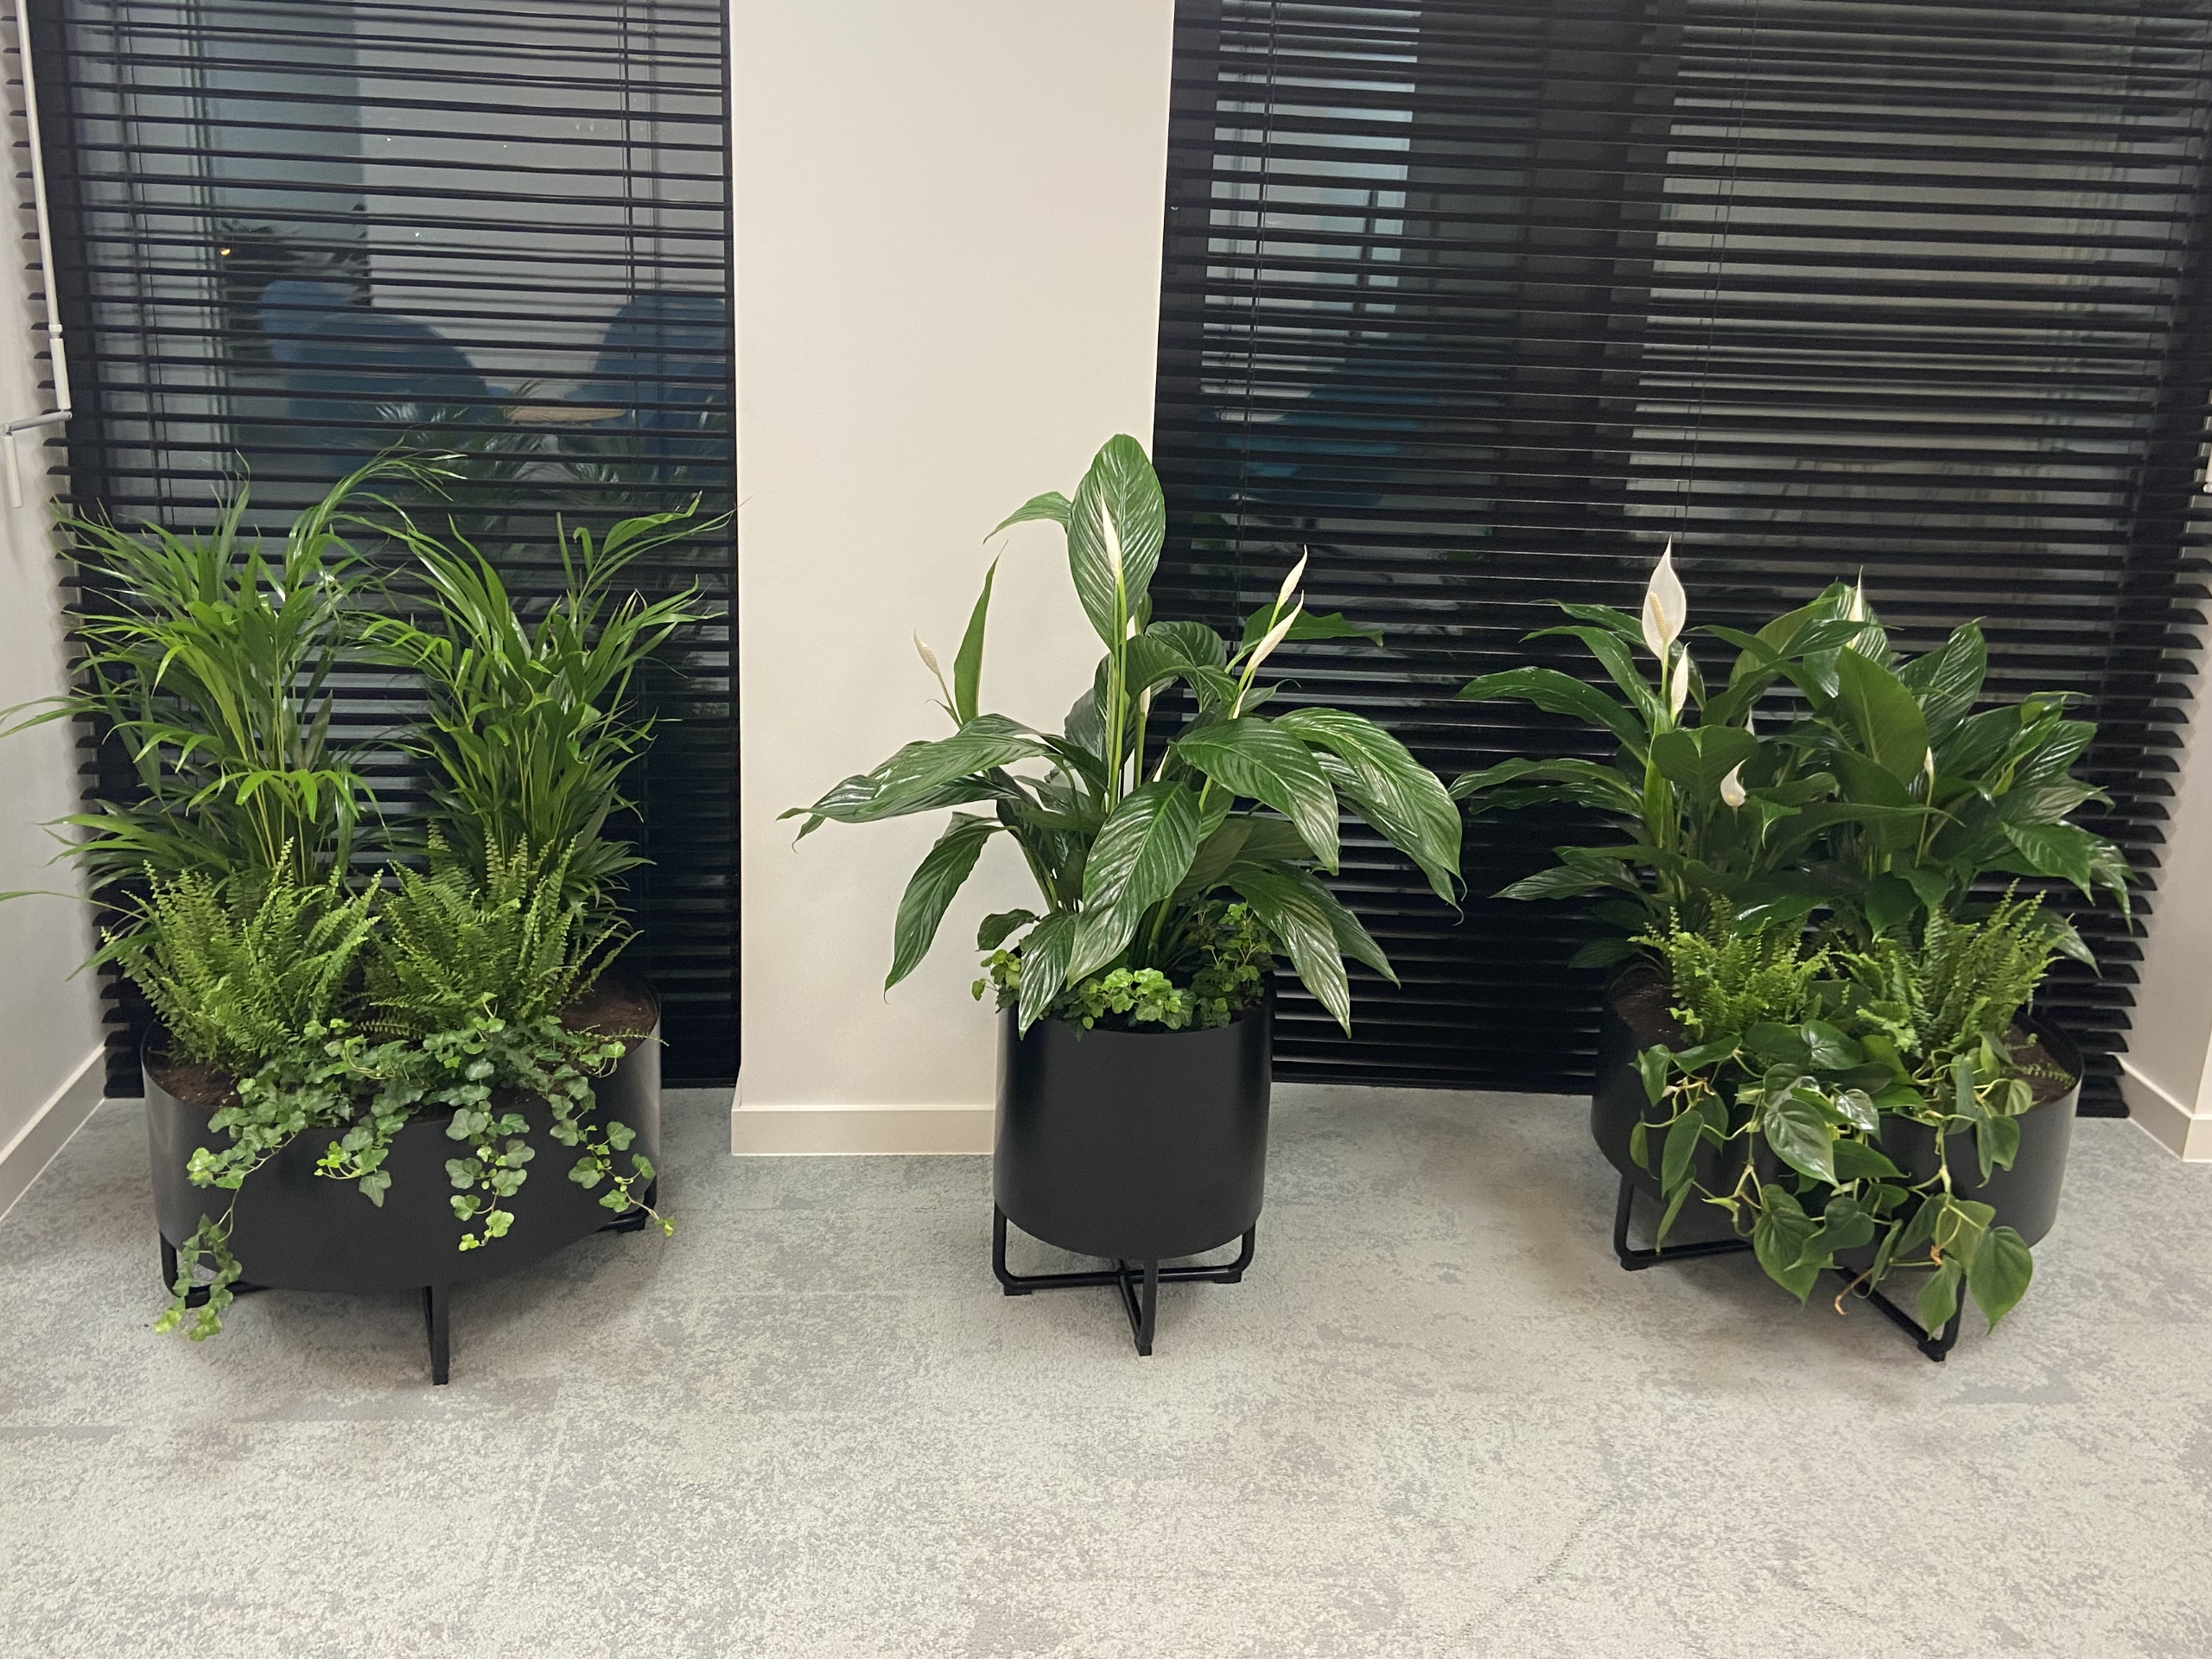 Trzy rośliny doniczkowe w biurze z żaluzjami.